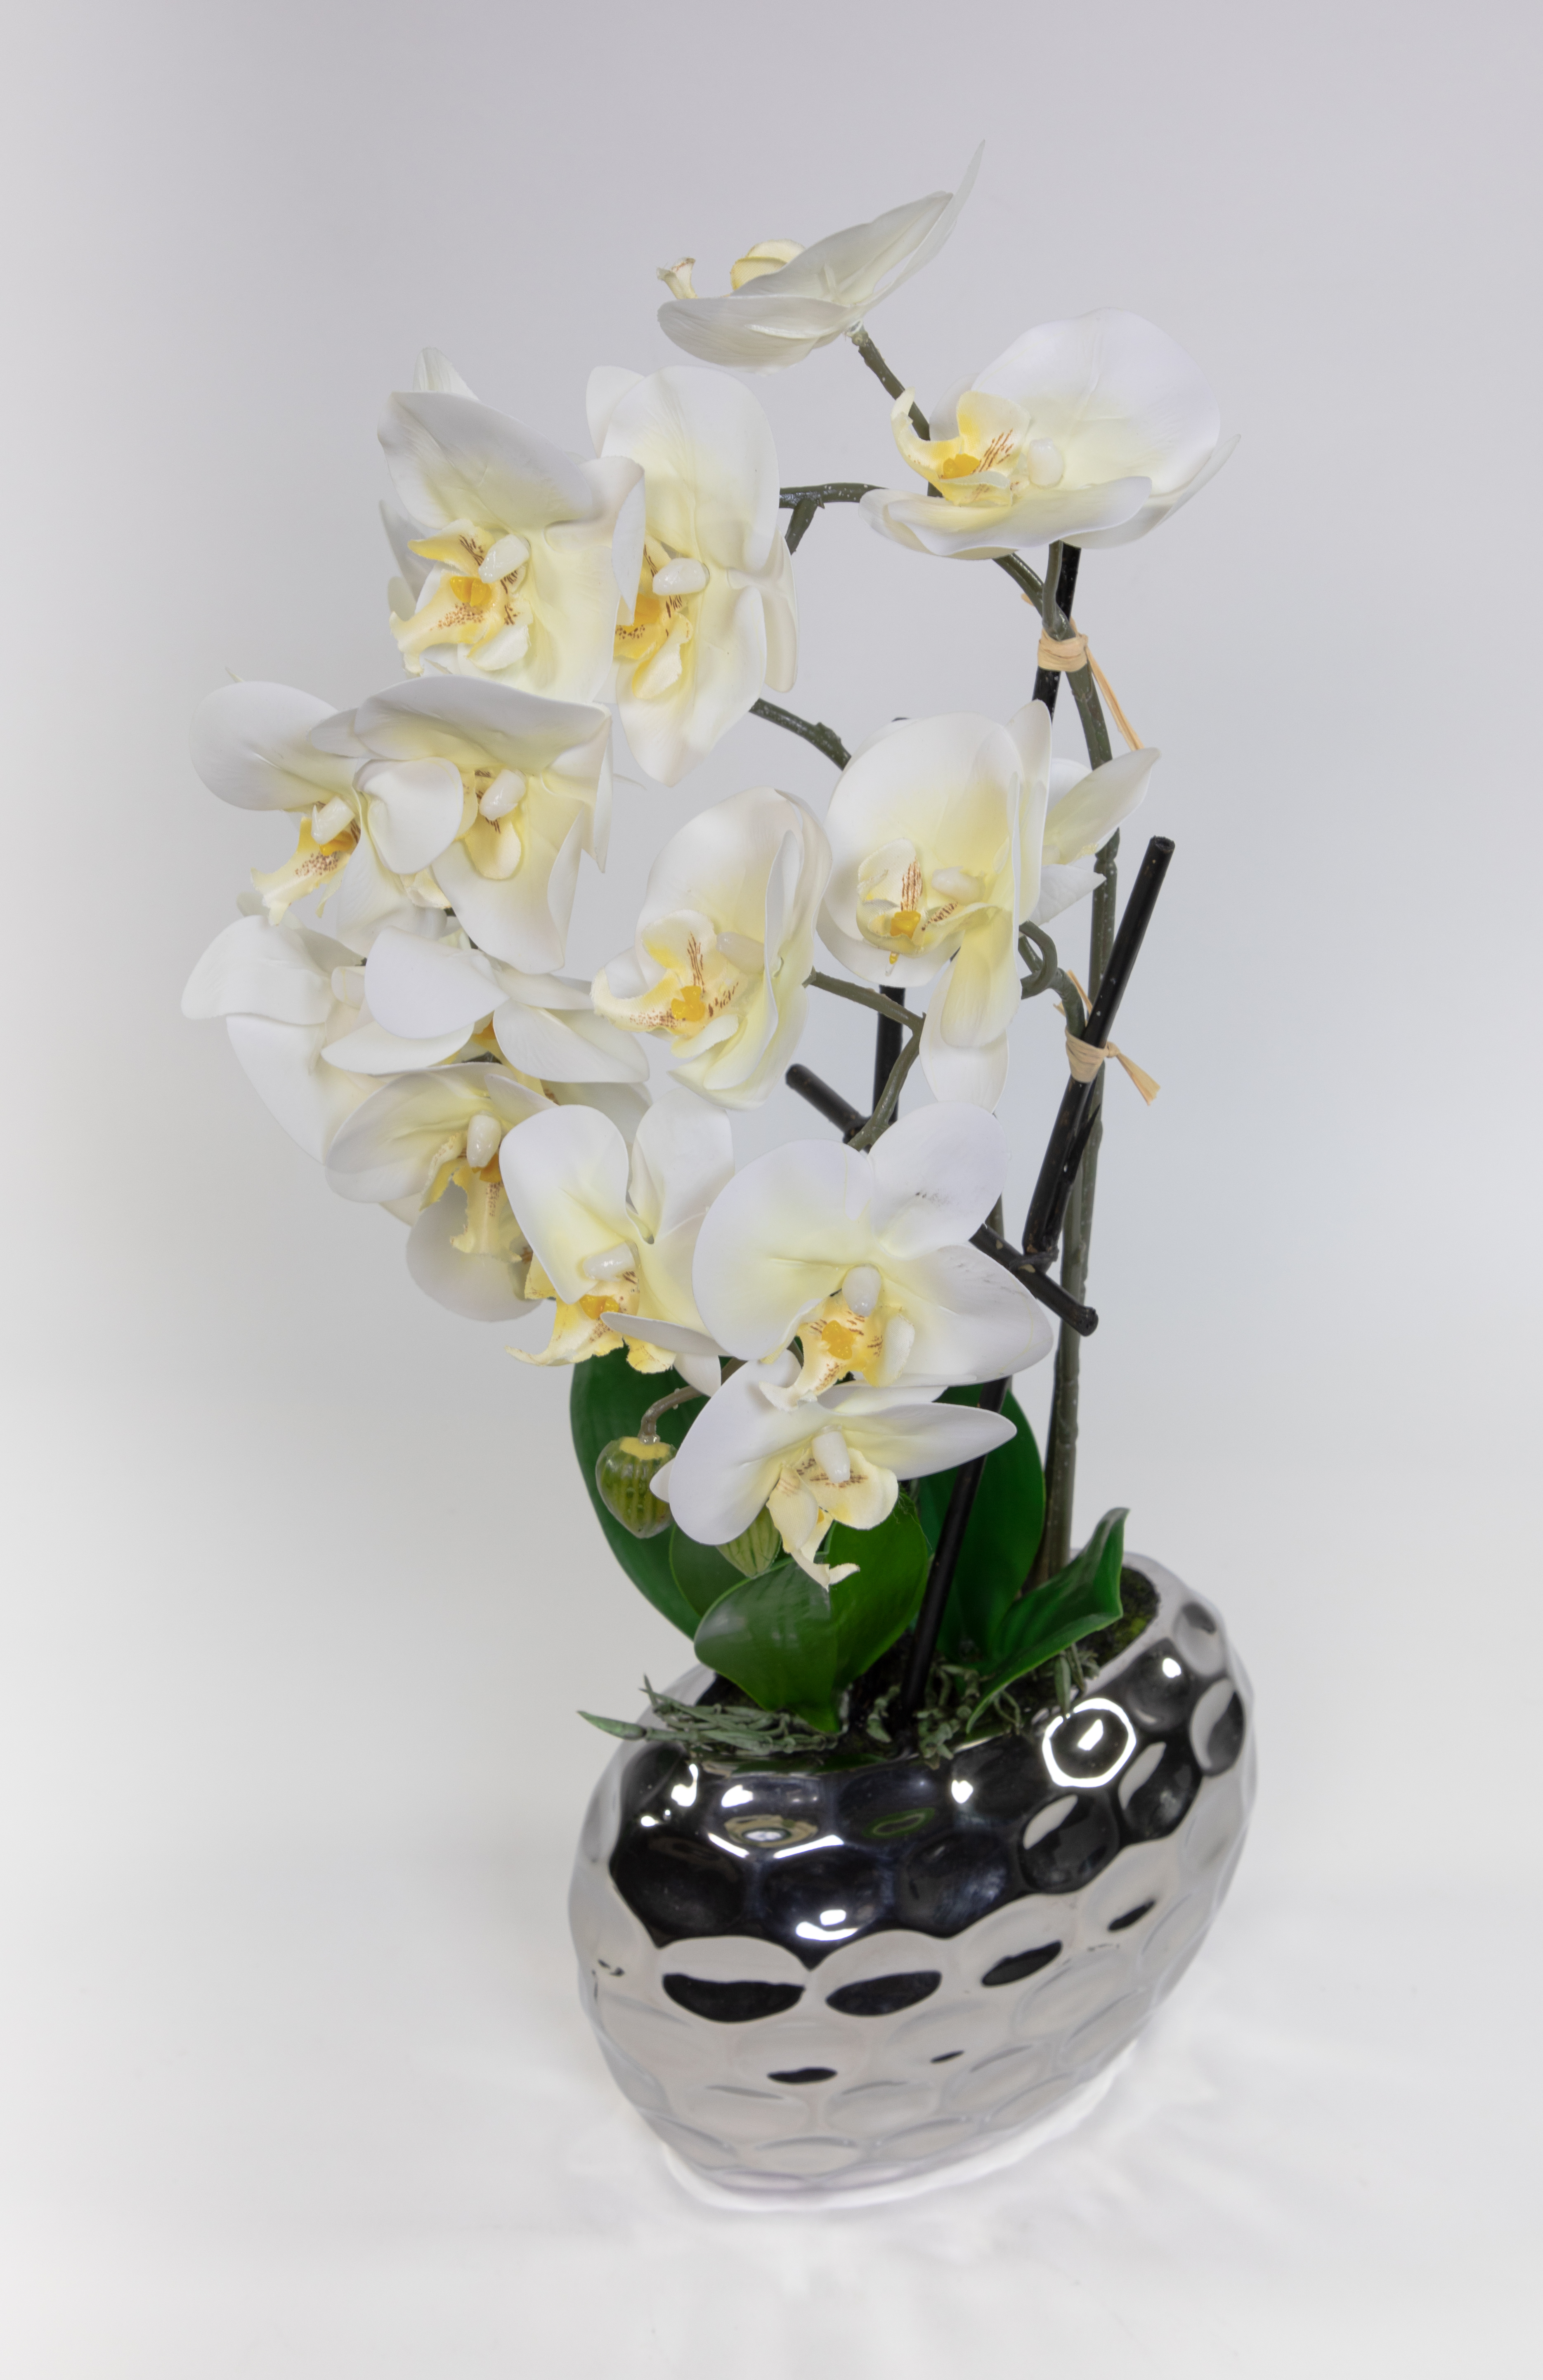 Orchidee Real Touch 56x26cm weiß in Silber-Keramikvase GA Kunstblumen künstliche Blumen Phalaenopsis